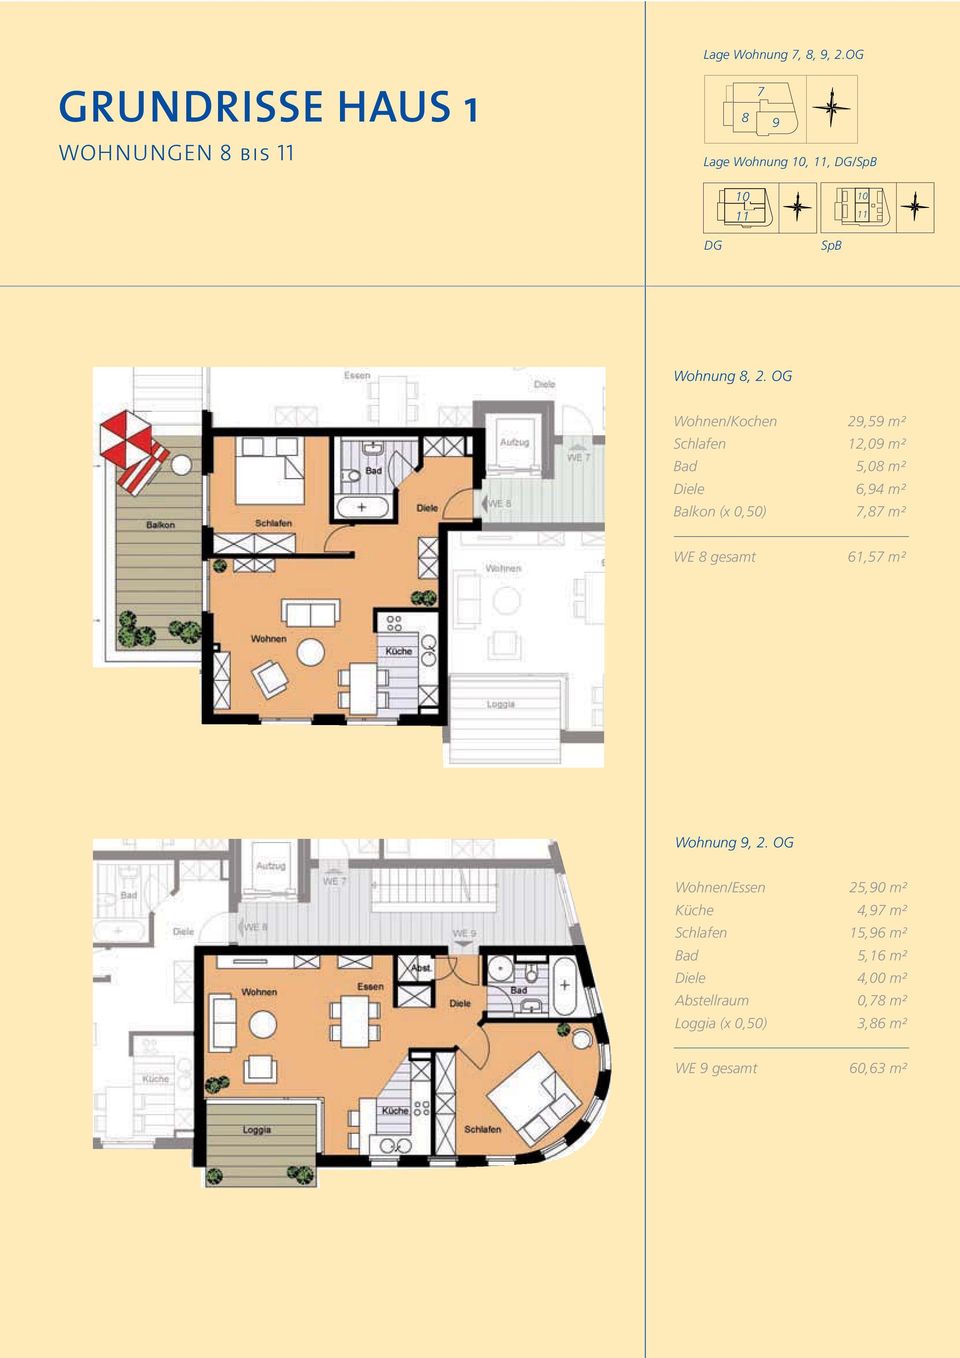 m² WE 8 gesamt 61,57 m² Wohnung 9, 2.